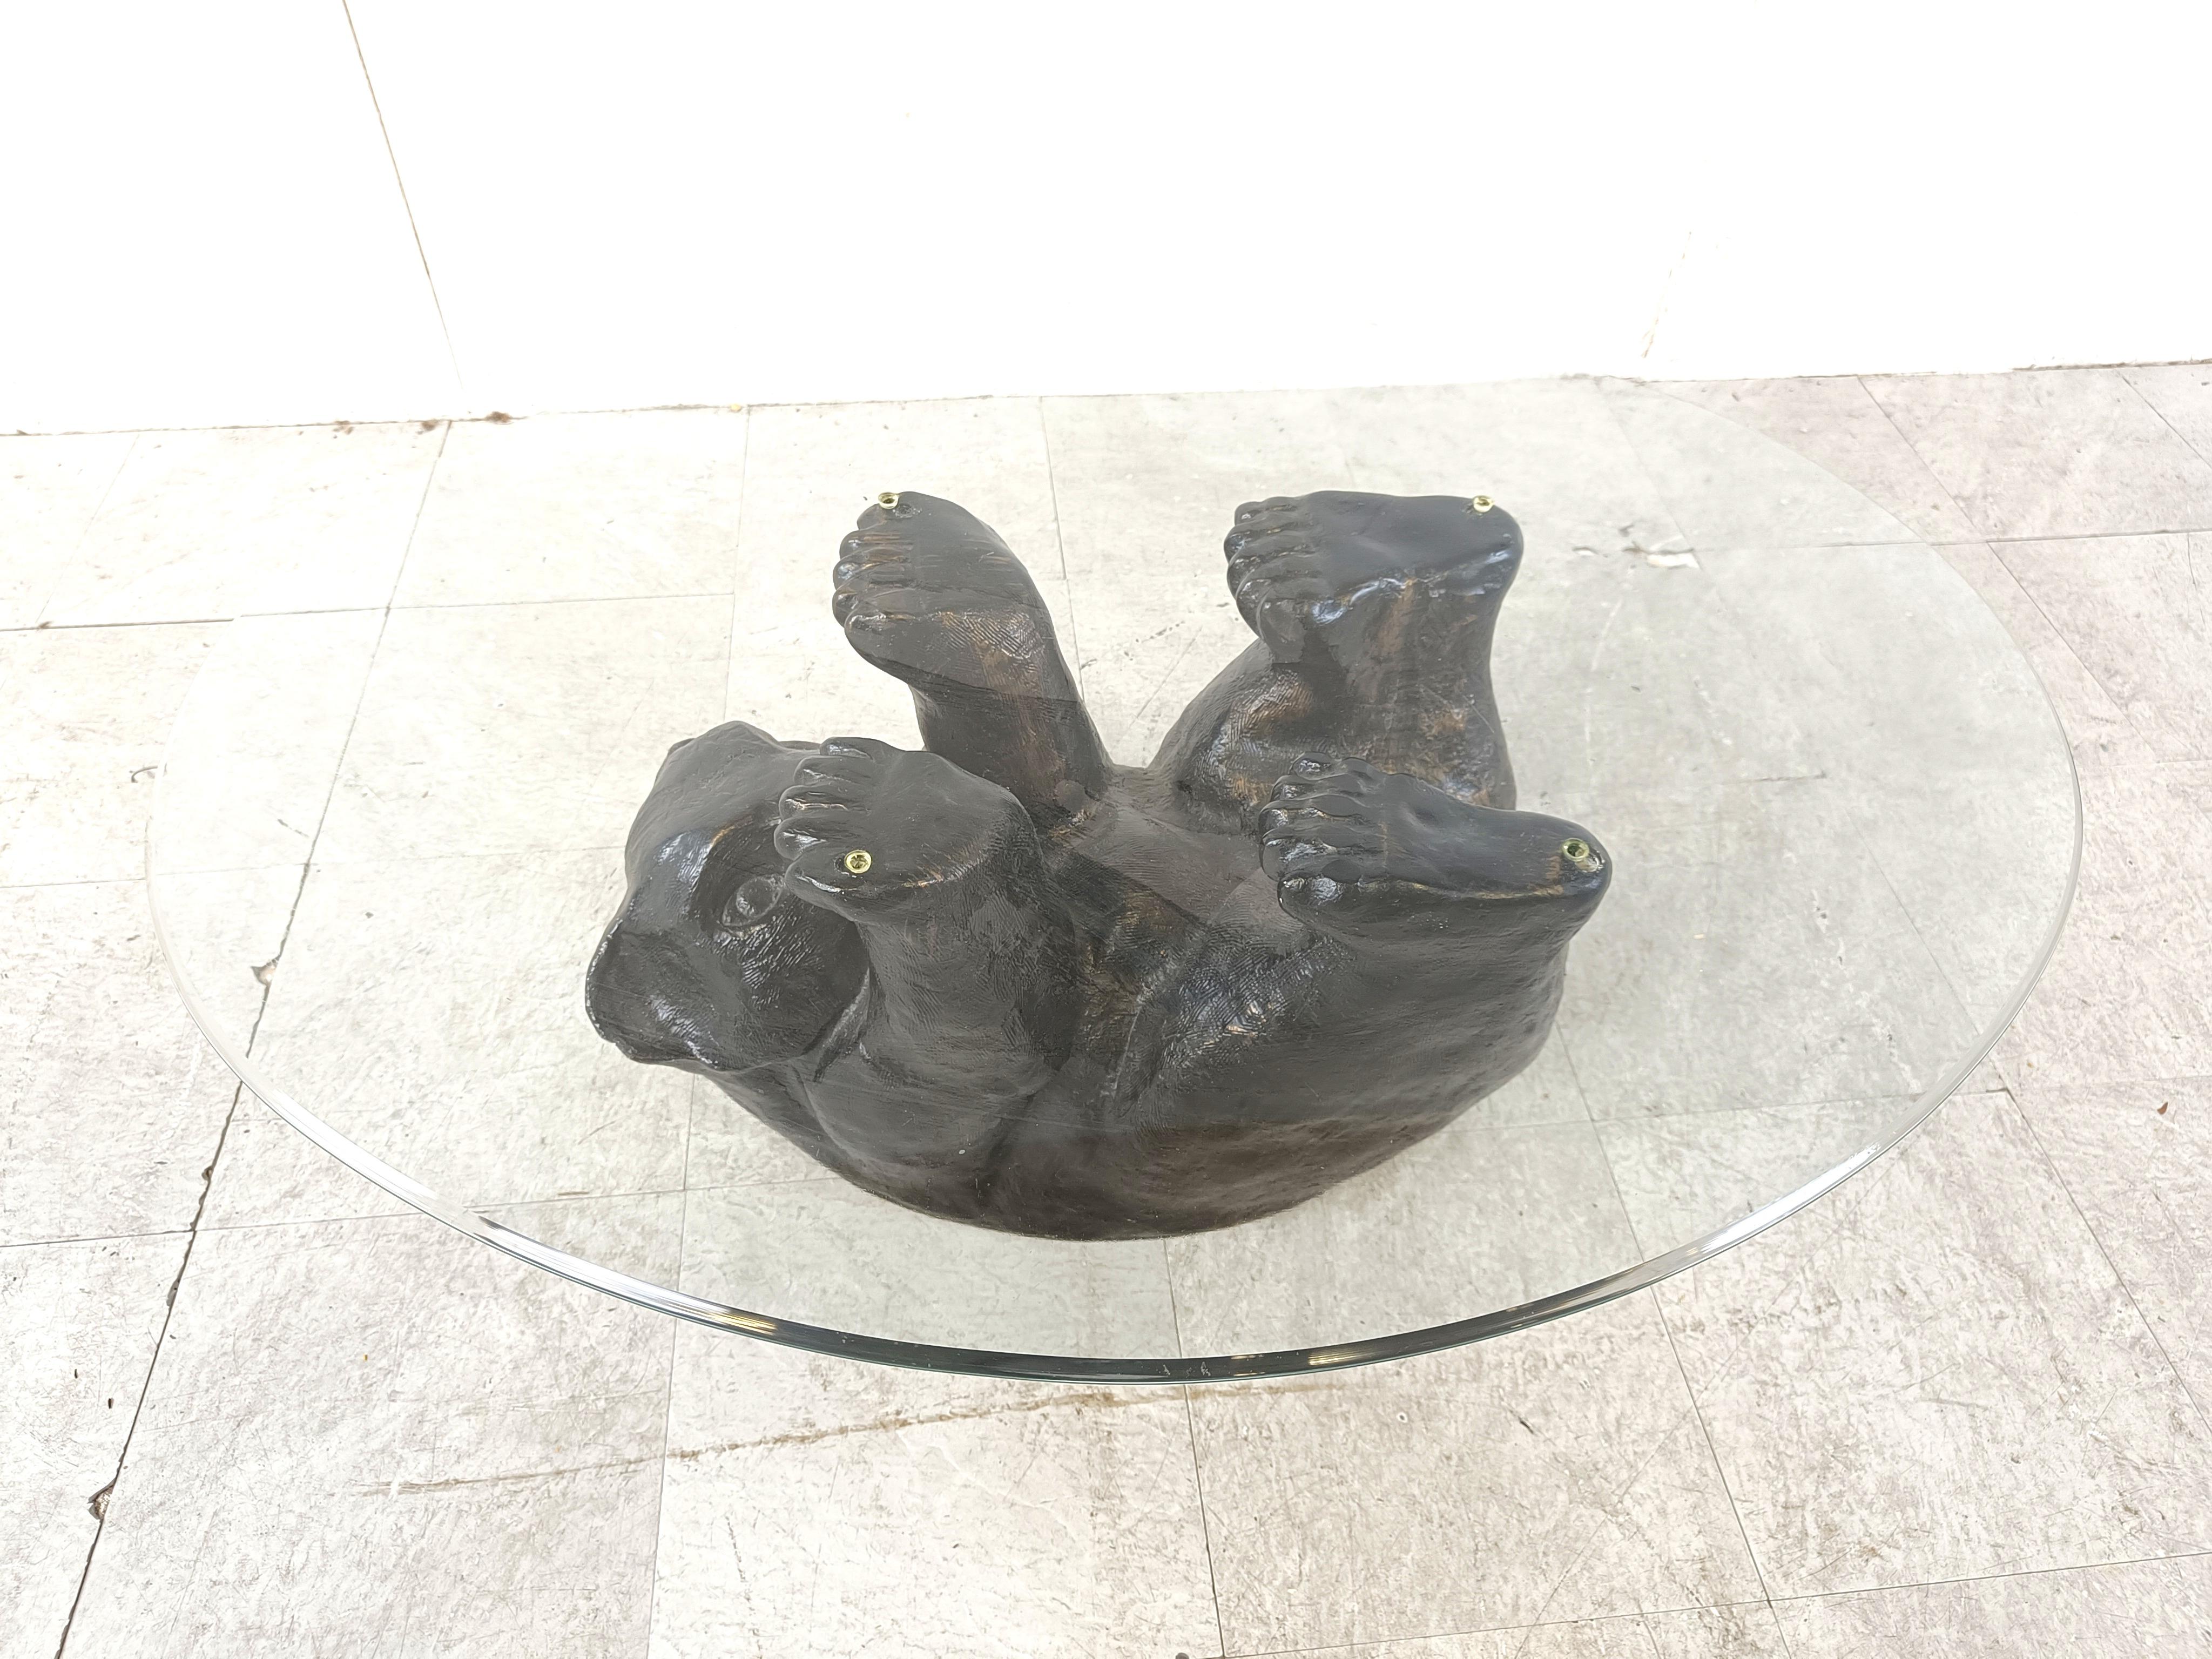 Auffälliger skulpturaler Couchtisch mit schwarzem Bär.

Dieser einzigartige Tisch sieht toll und irgendwie niedlich aus.

1970er Jahre - Belgien

Guter Zustand

Abmessungen Basis:
Höhe: 40cm
Breite: 90cm
Tiefe: 70cm

Ref.: 385192